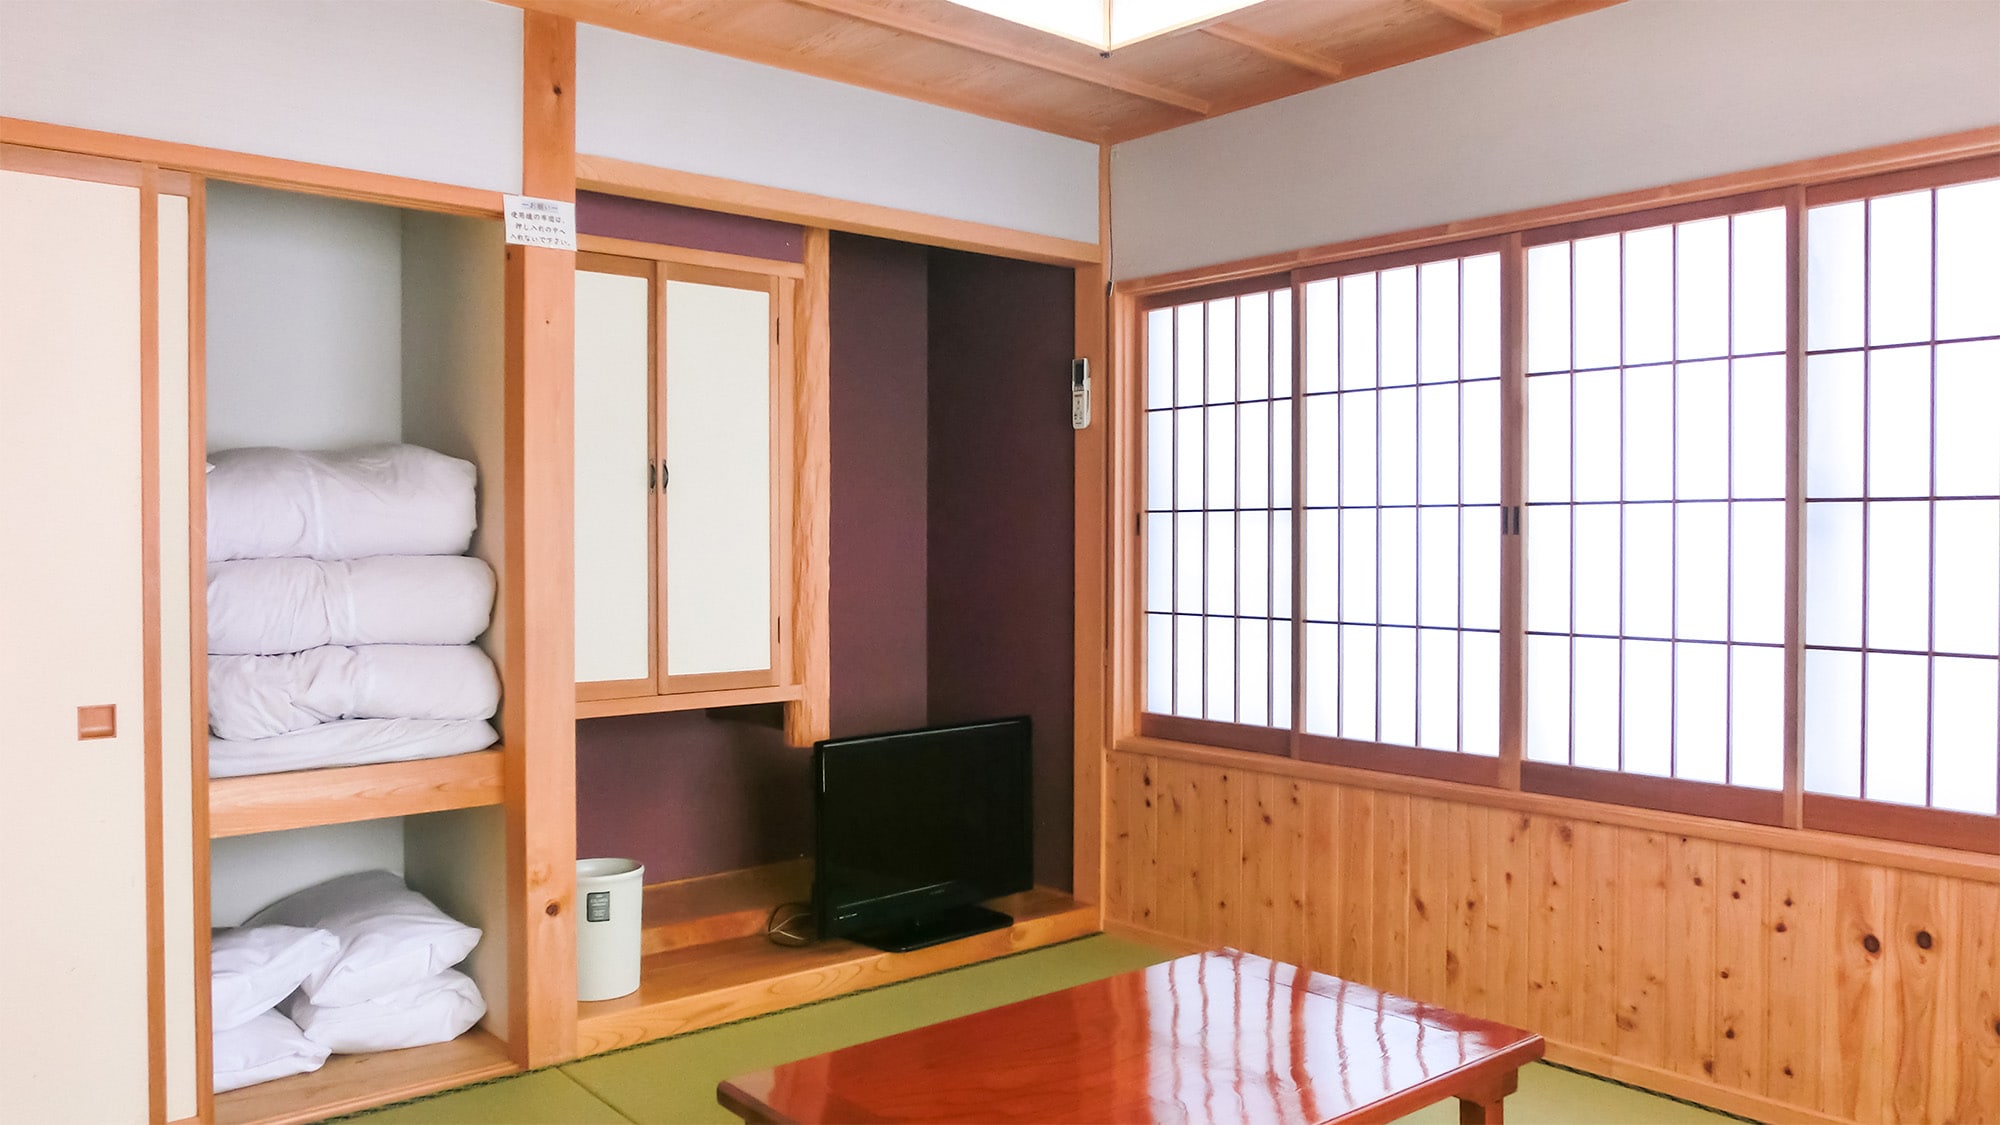 ・ อาคารใหม่ ห้องสไตล์ญี่ปุ่น 8-10 เสื่อทาทามิ โปรดใช้ฟูกของคุณเอง